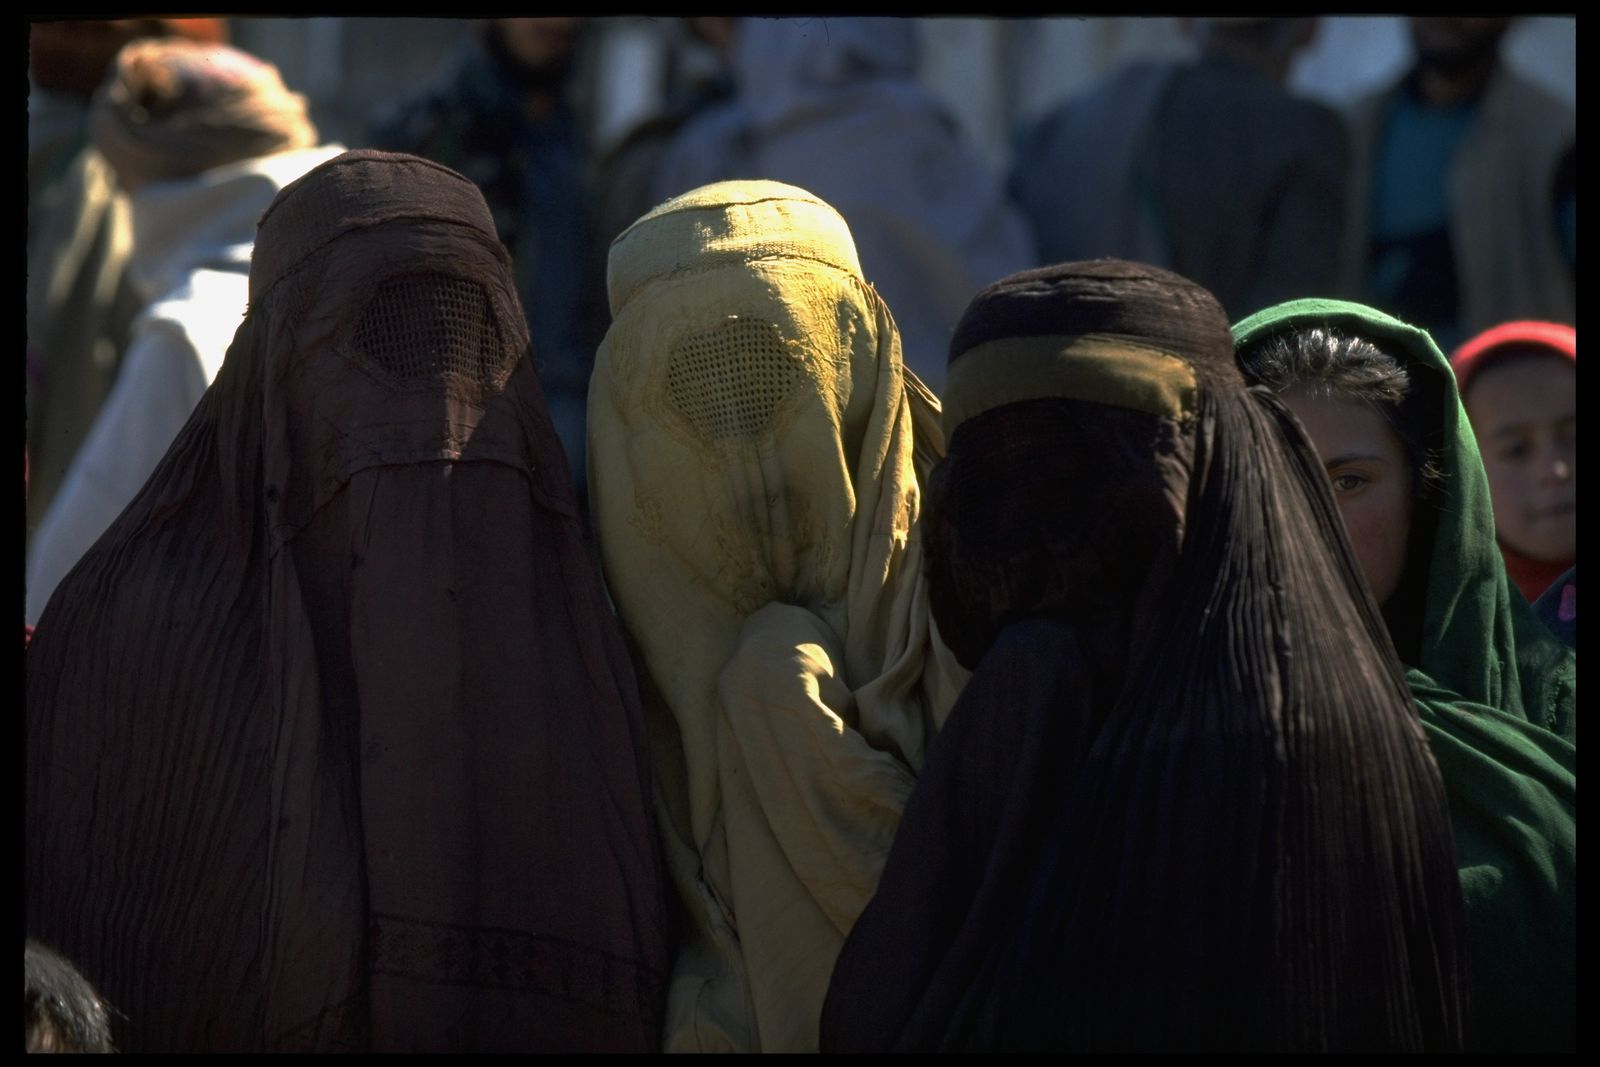  نساء أفغانيات في العاصمة كابول يرتدين الزي الذي فرضته حركة طالبان إبان حكمها للبلاد - 1 فبراير 1995 - Getty Images